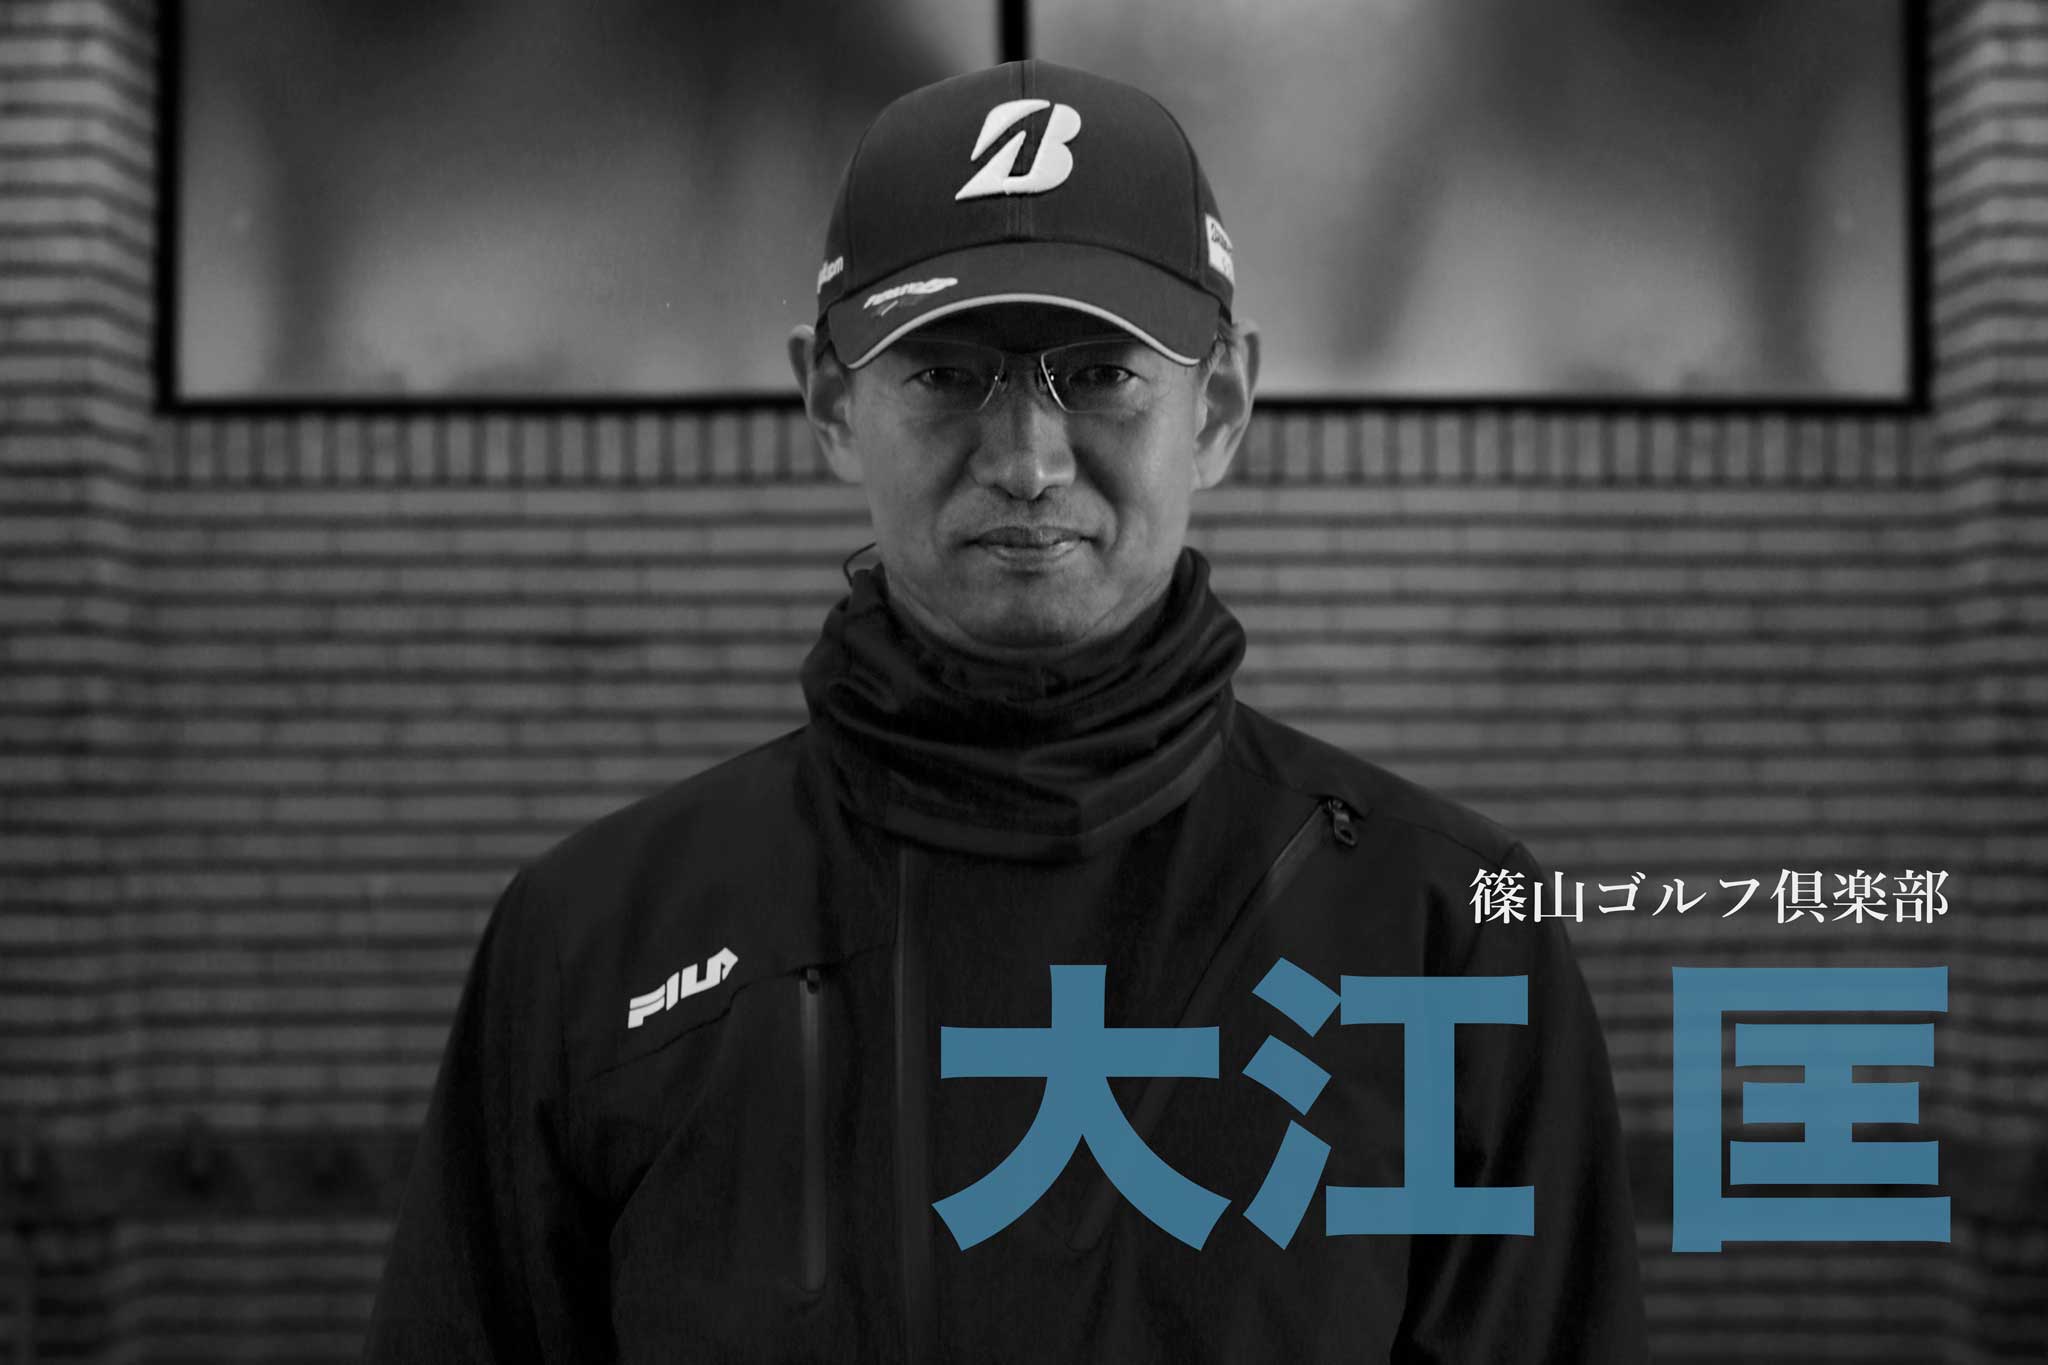 ゴルフサークル「Seven Eight セブンエイト」の「tuwamono ツワモノ」第4回のインタビュー大江匡さんのページタイトル写真